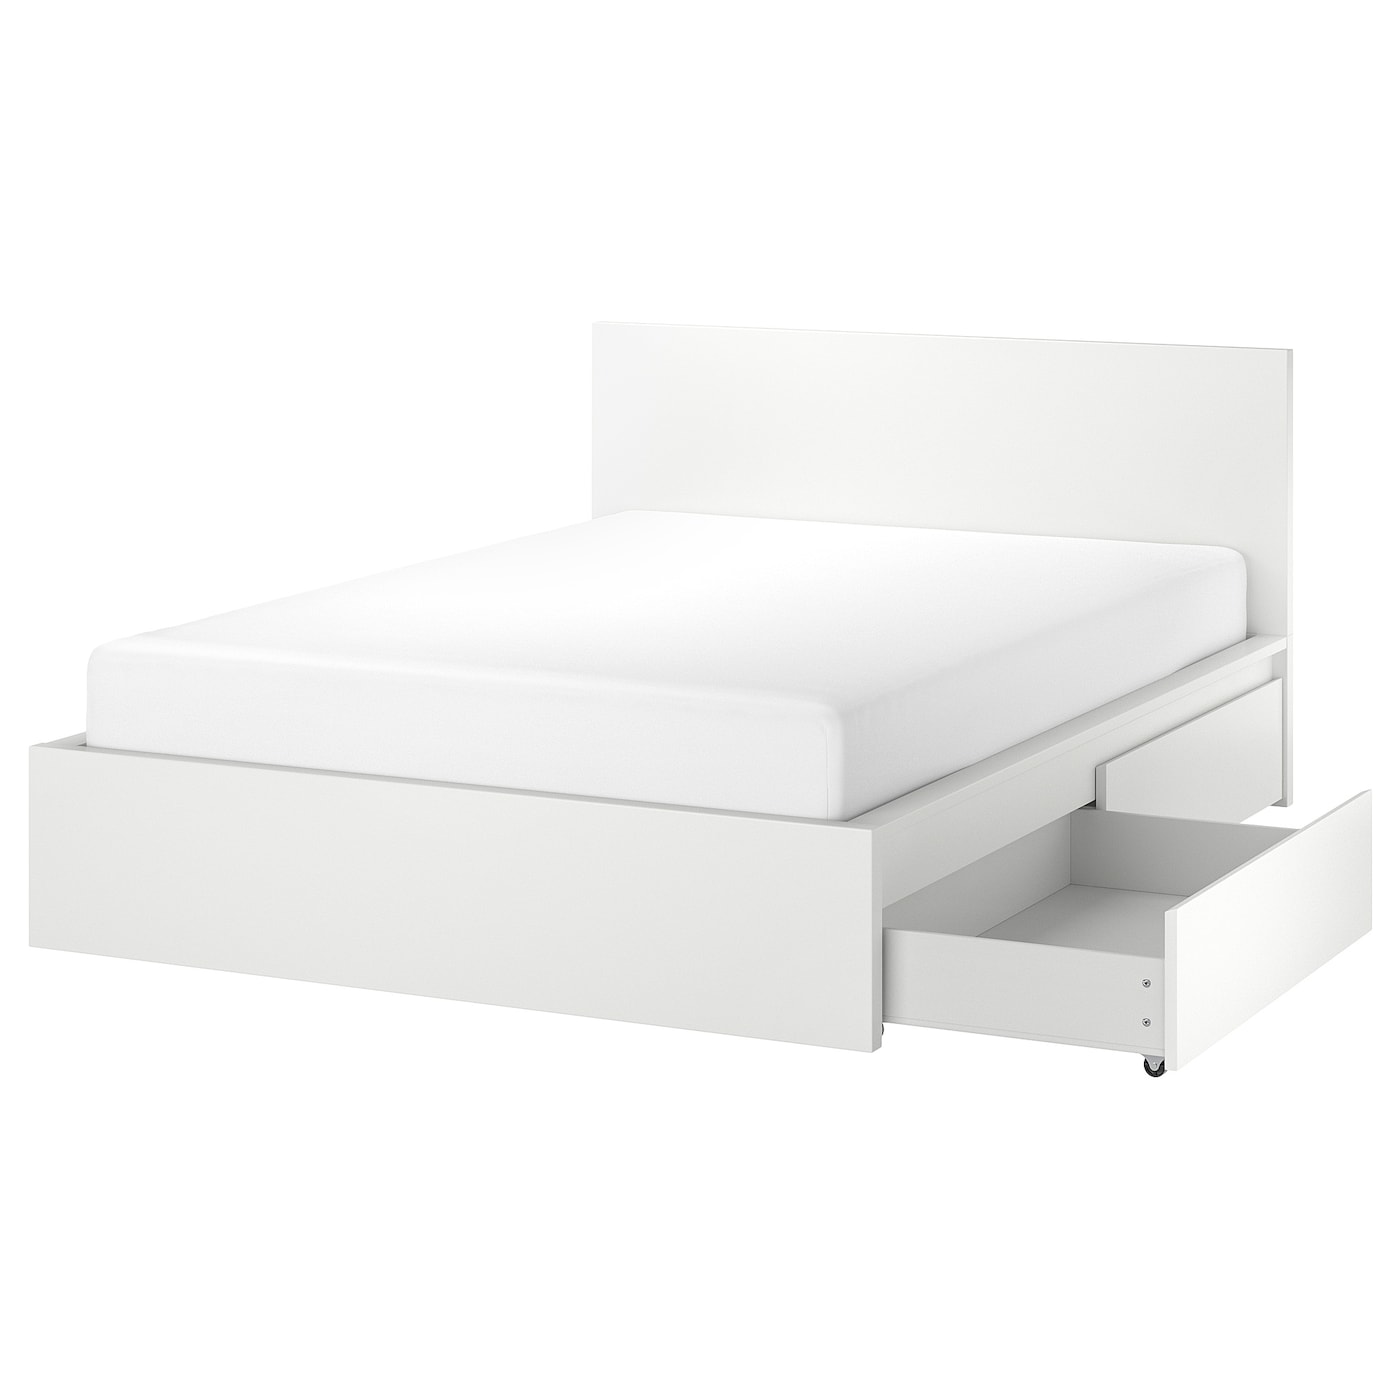 Каркас кровати с 4 ящиками для хранения - IKEA MALM, 200х180 см, белый, МАЛЬМ ИКЕА